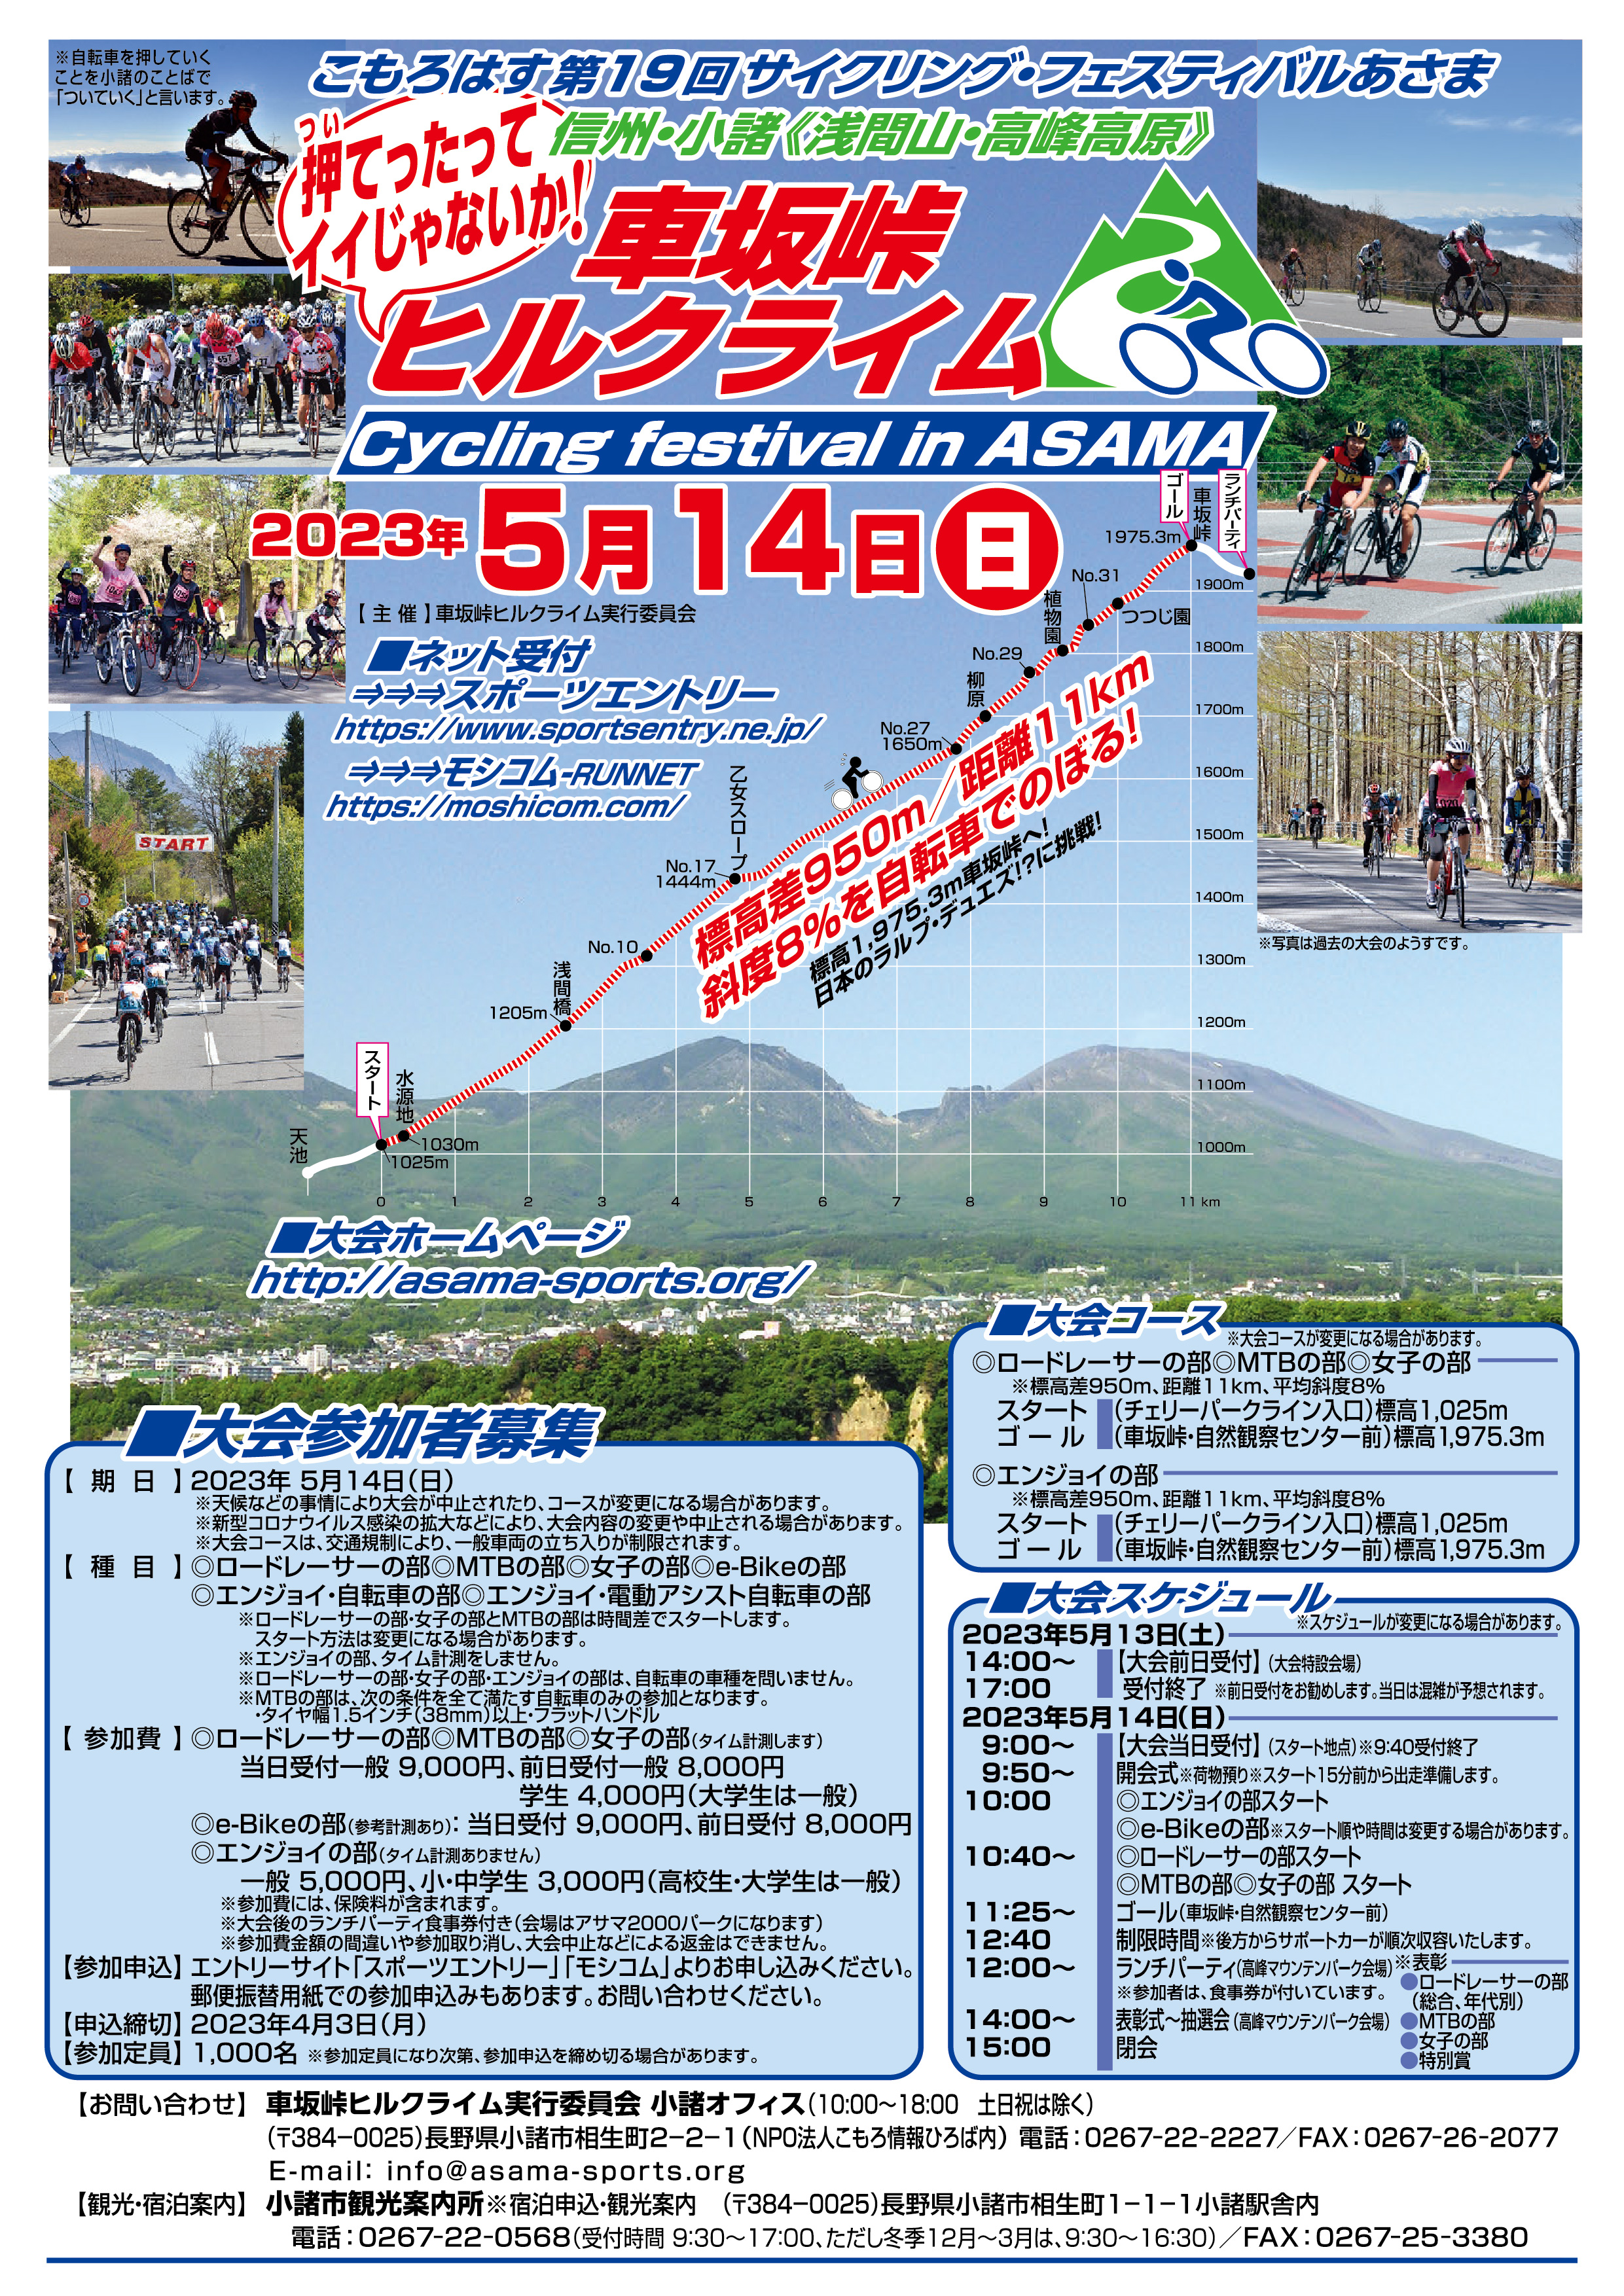 第19回サイクリング・フェスティバルあさま「車坂峠ヒルクライム・2023大会」